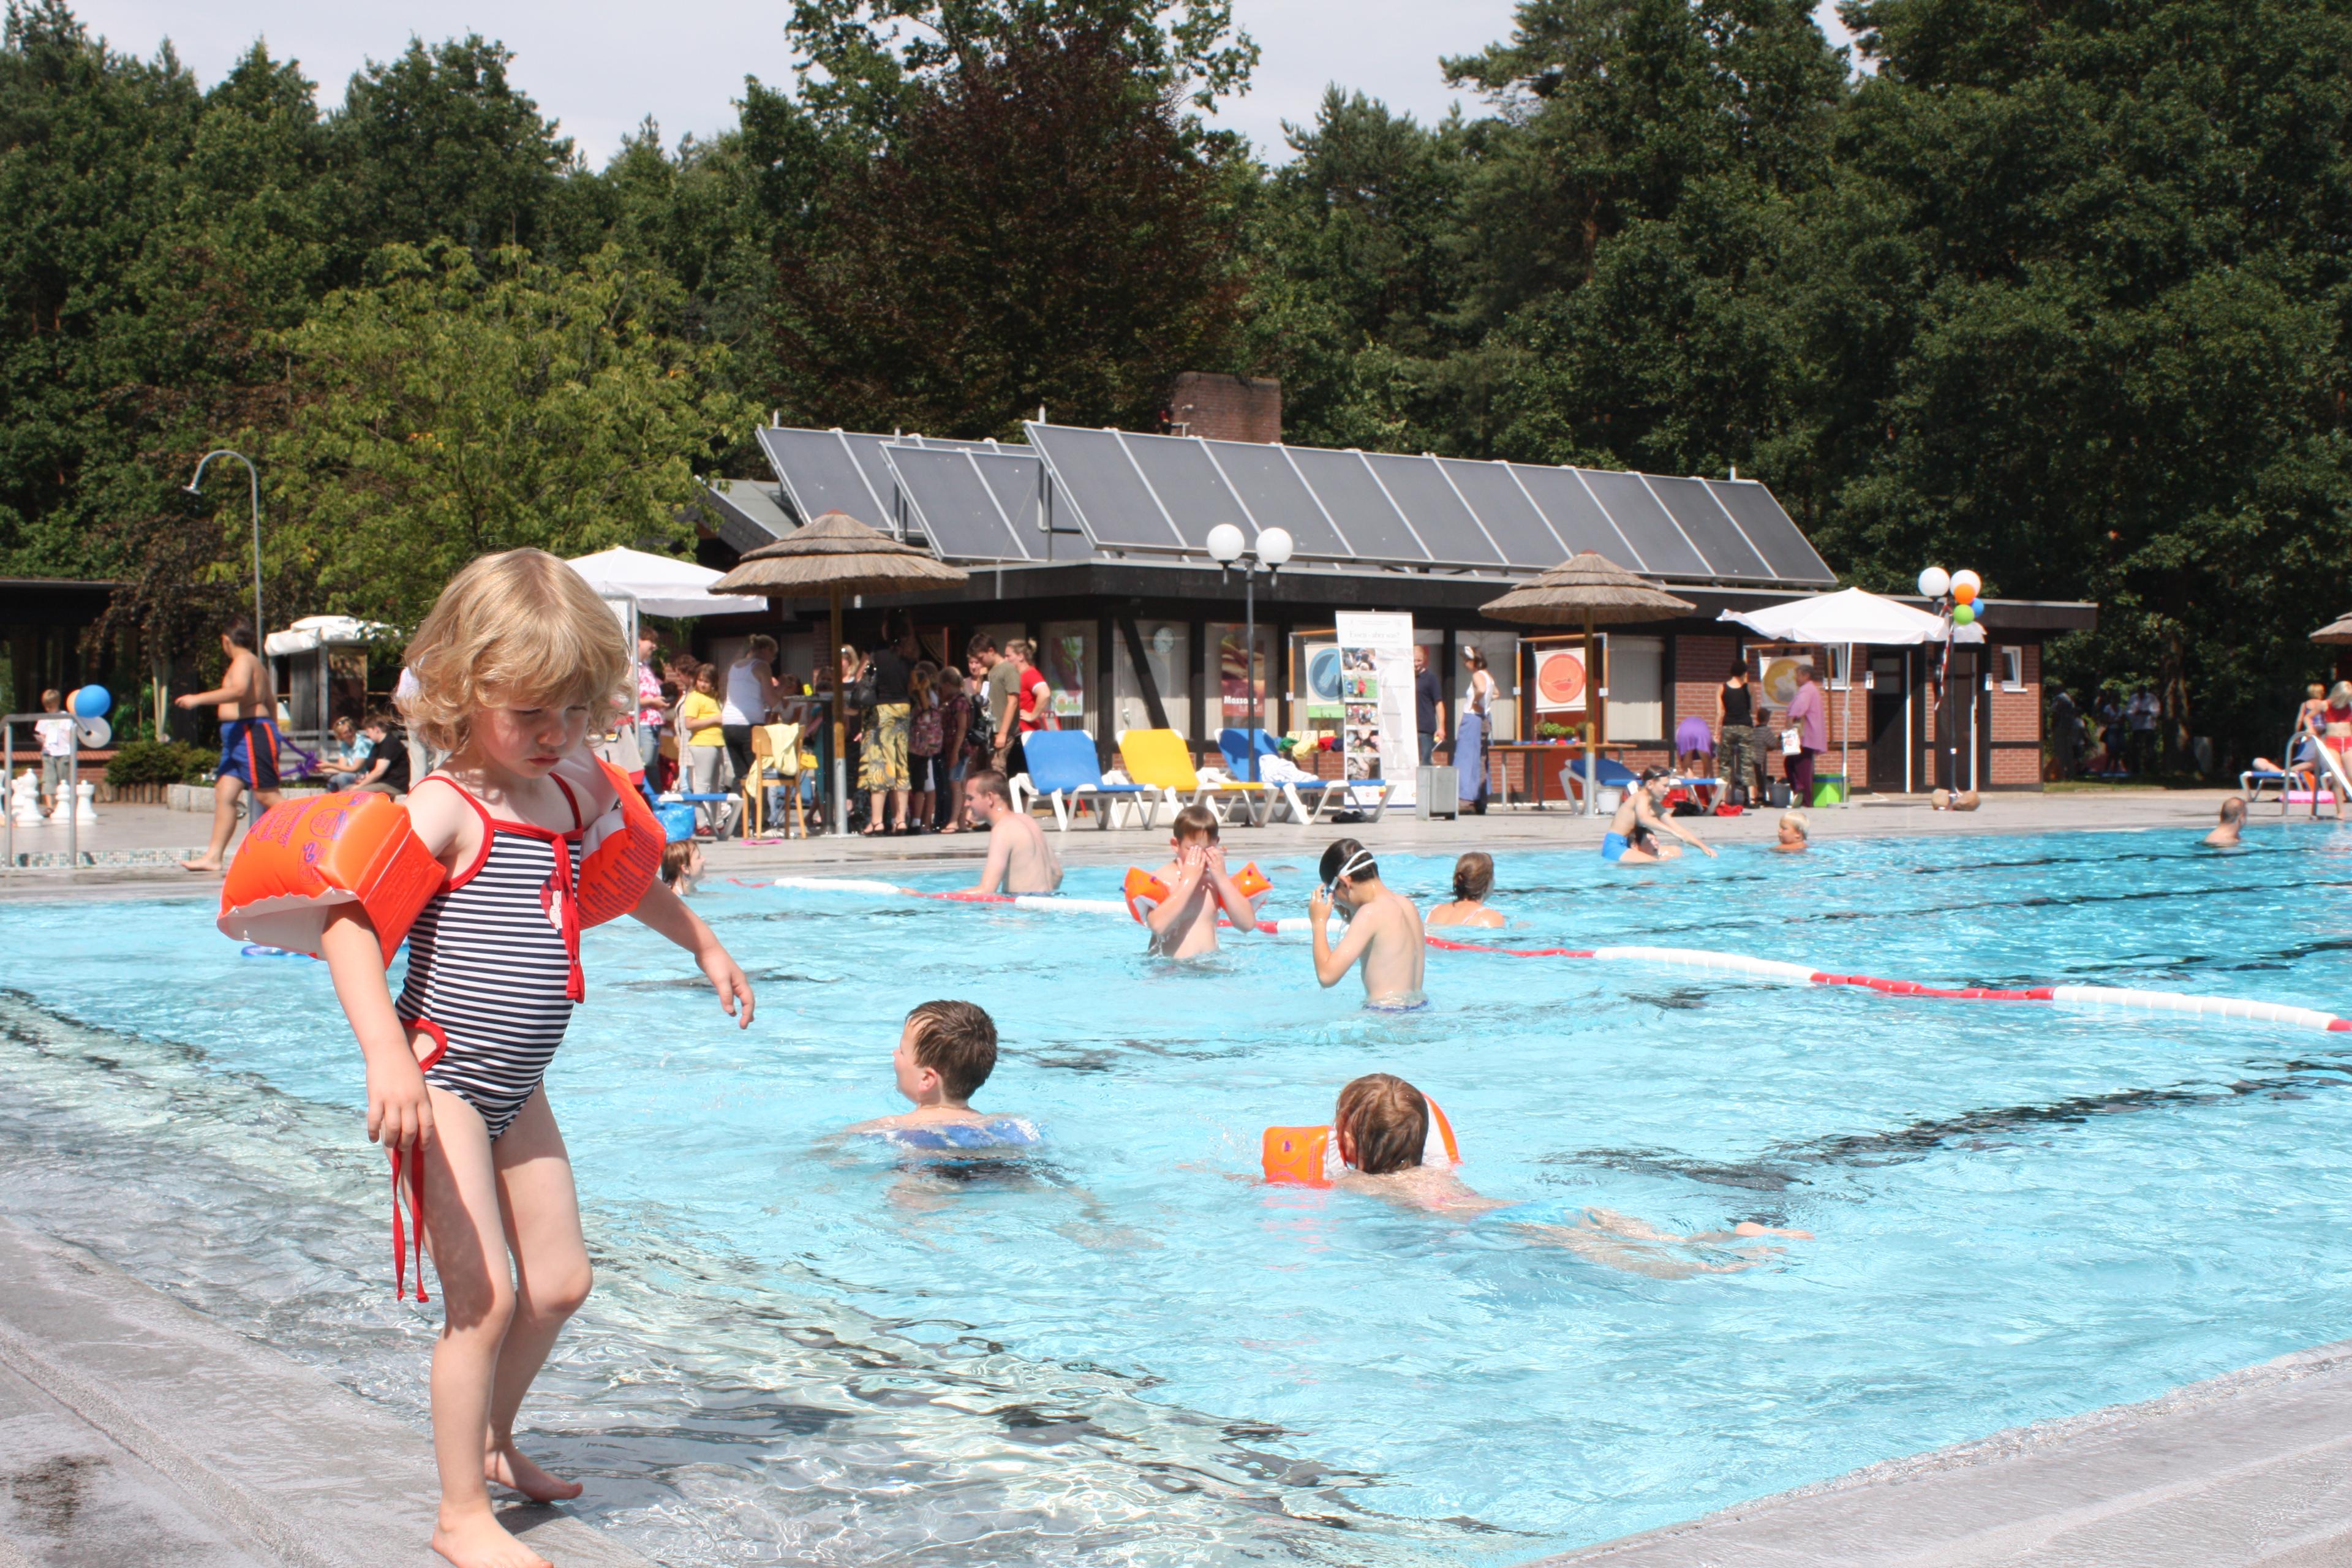 Beheiztes Schwimmbad Ferienzentrum Heidenau - Campingplatz